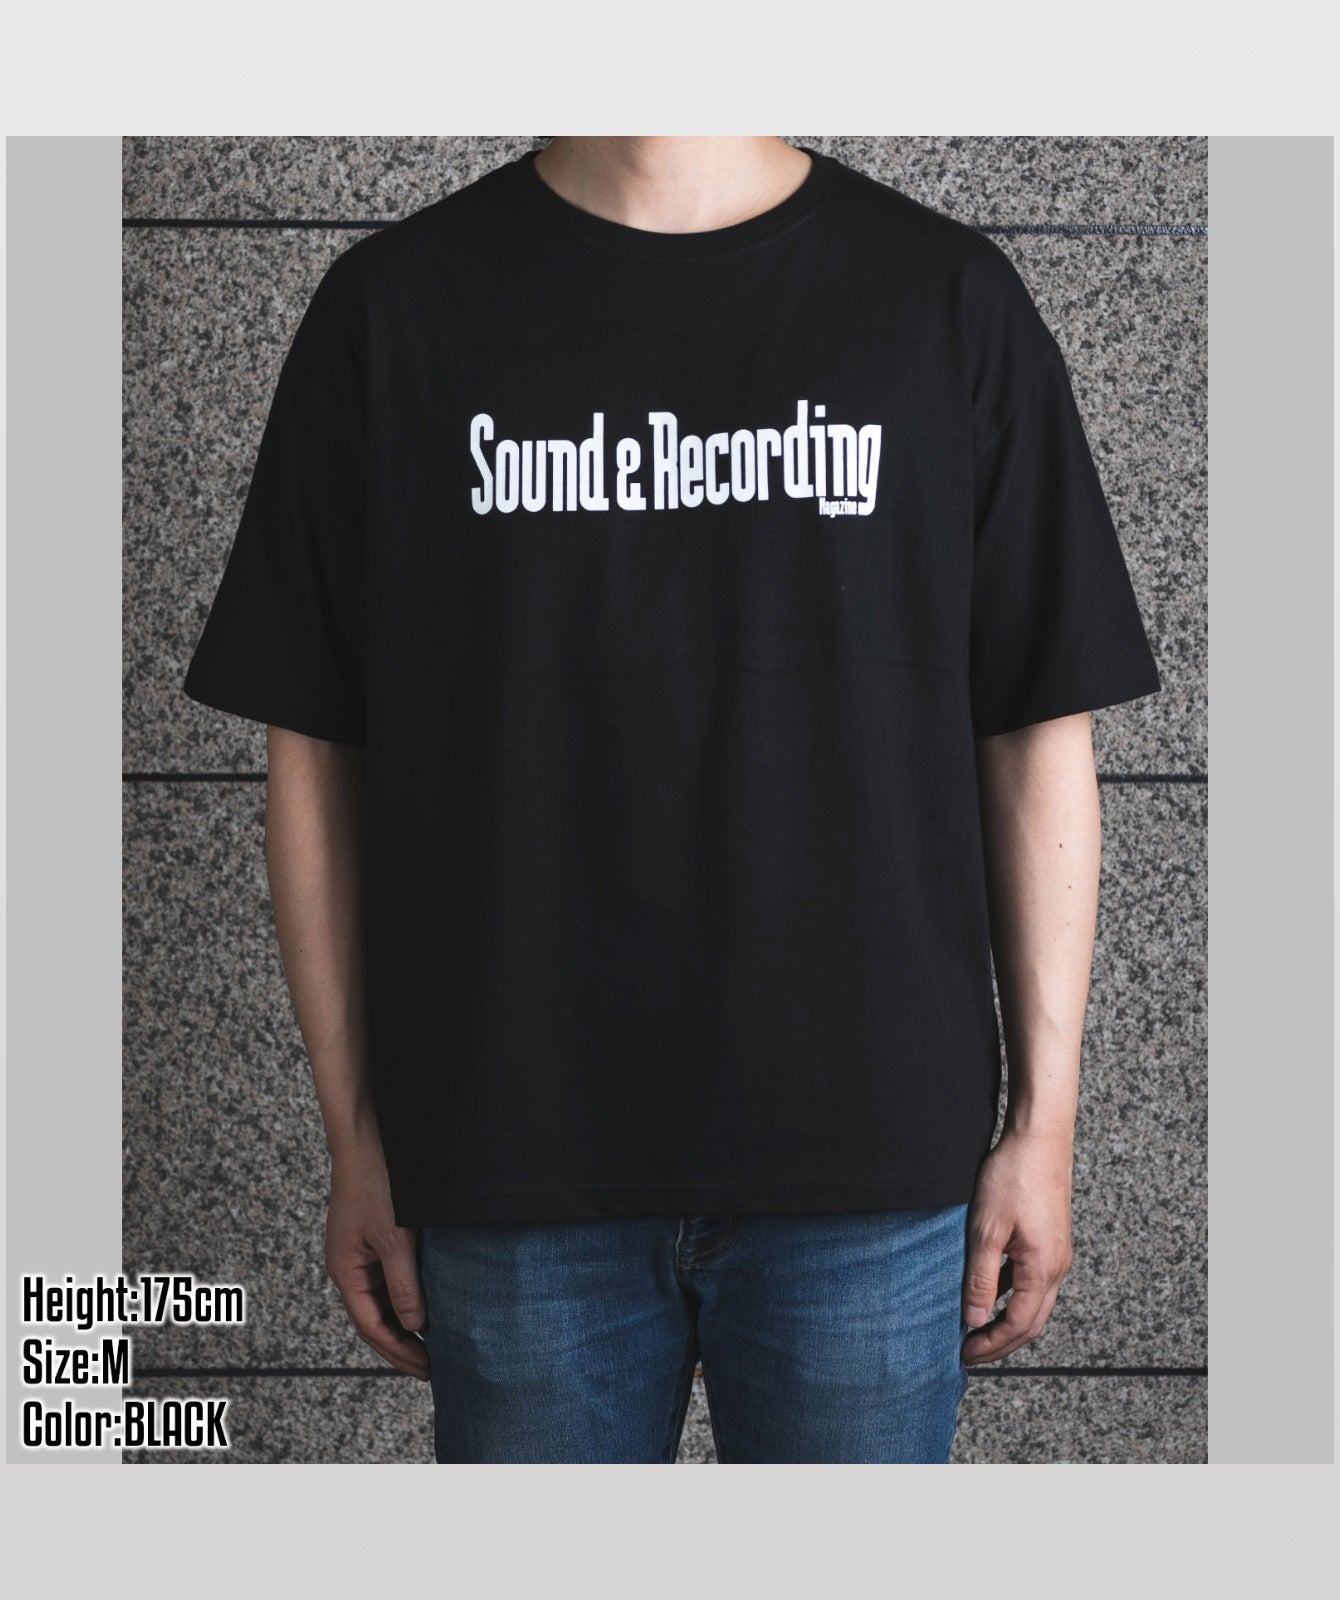 Sound & Recording Magazine オリジナルロゴ(ビッグシルエット)白ロゴ